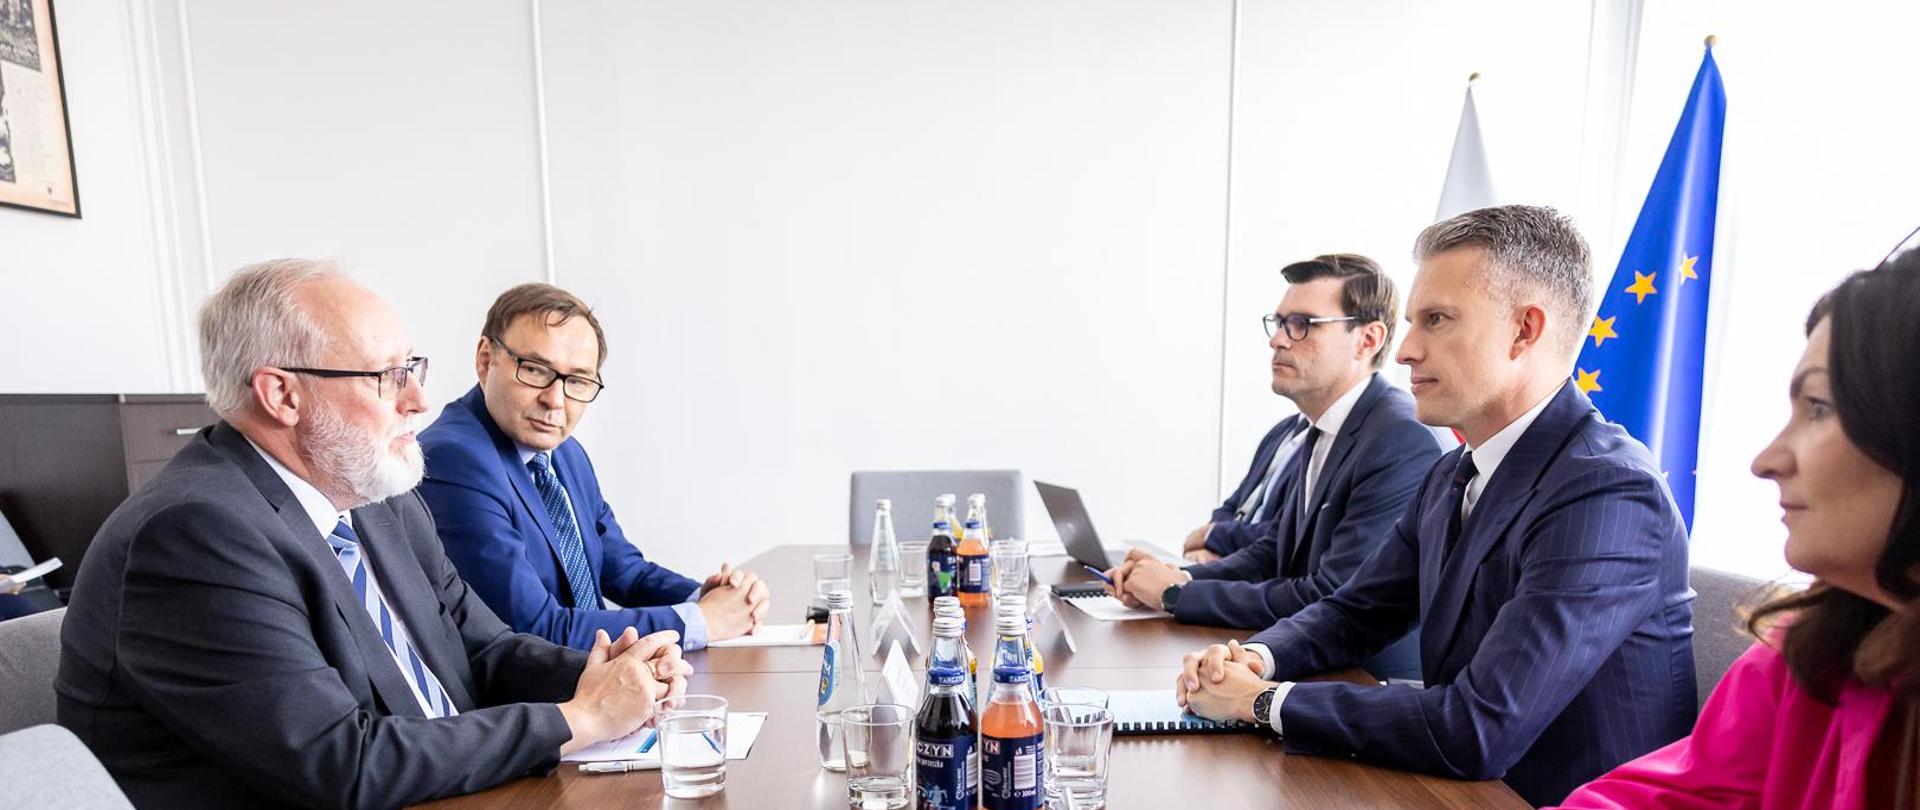 Wiceminister infrastruktury Arkadiusz Marchewka w trakcie spotkania z Dyrektorem Zarządzającym Portu Ystad, Björnem Boströmem